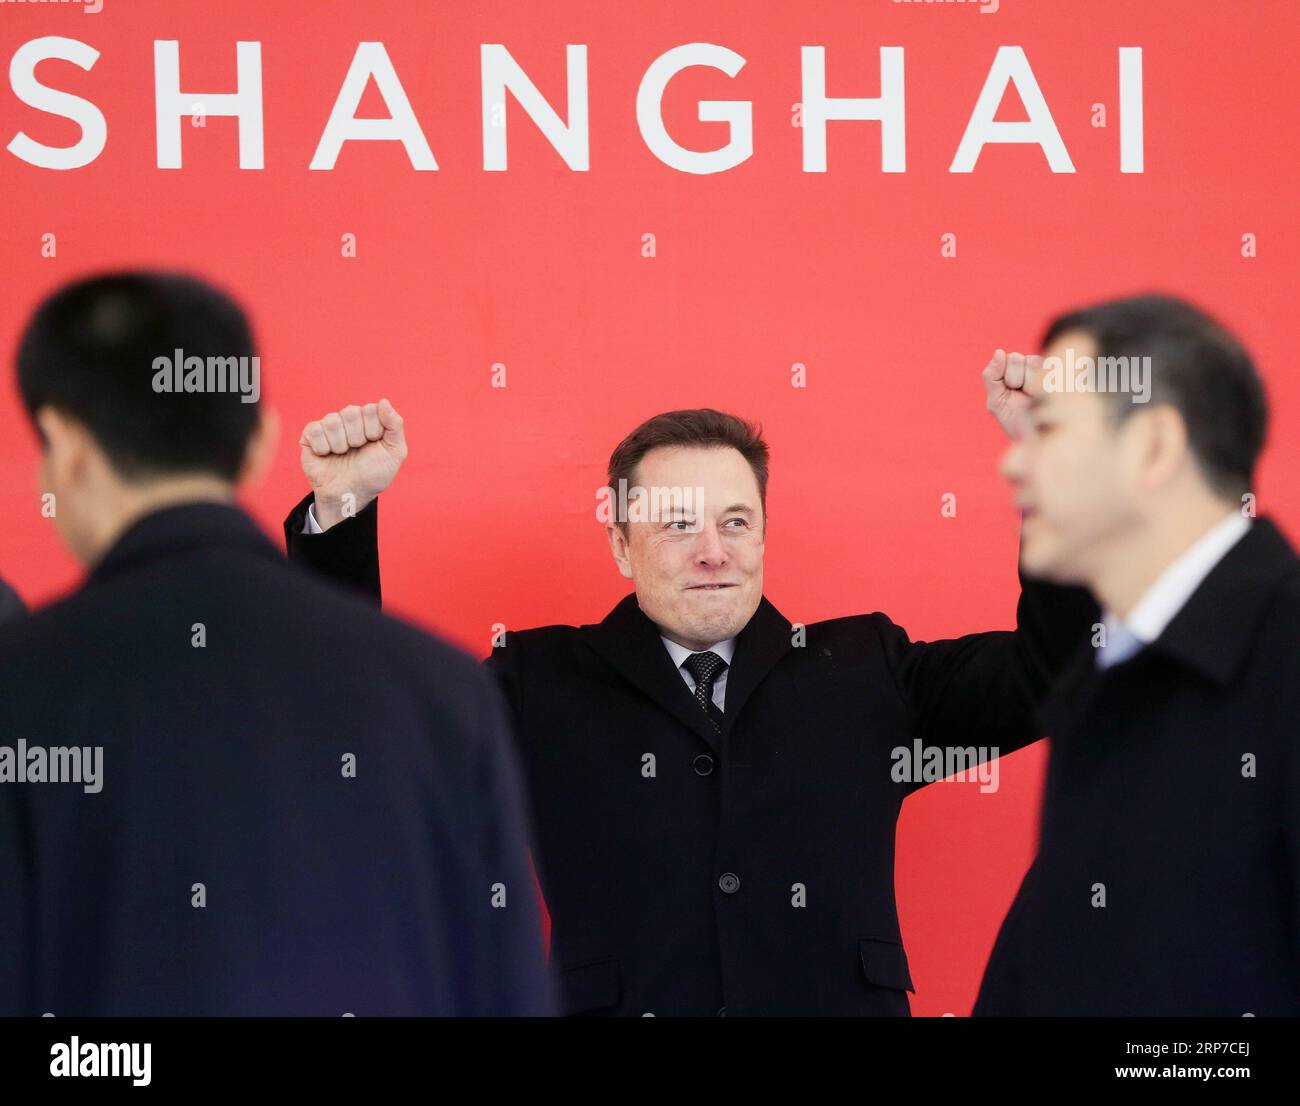 190203 -- BEIJING, Feb. 3, 2019 Xinhua -- Tesla CEO Elon Musk C attends ...